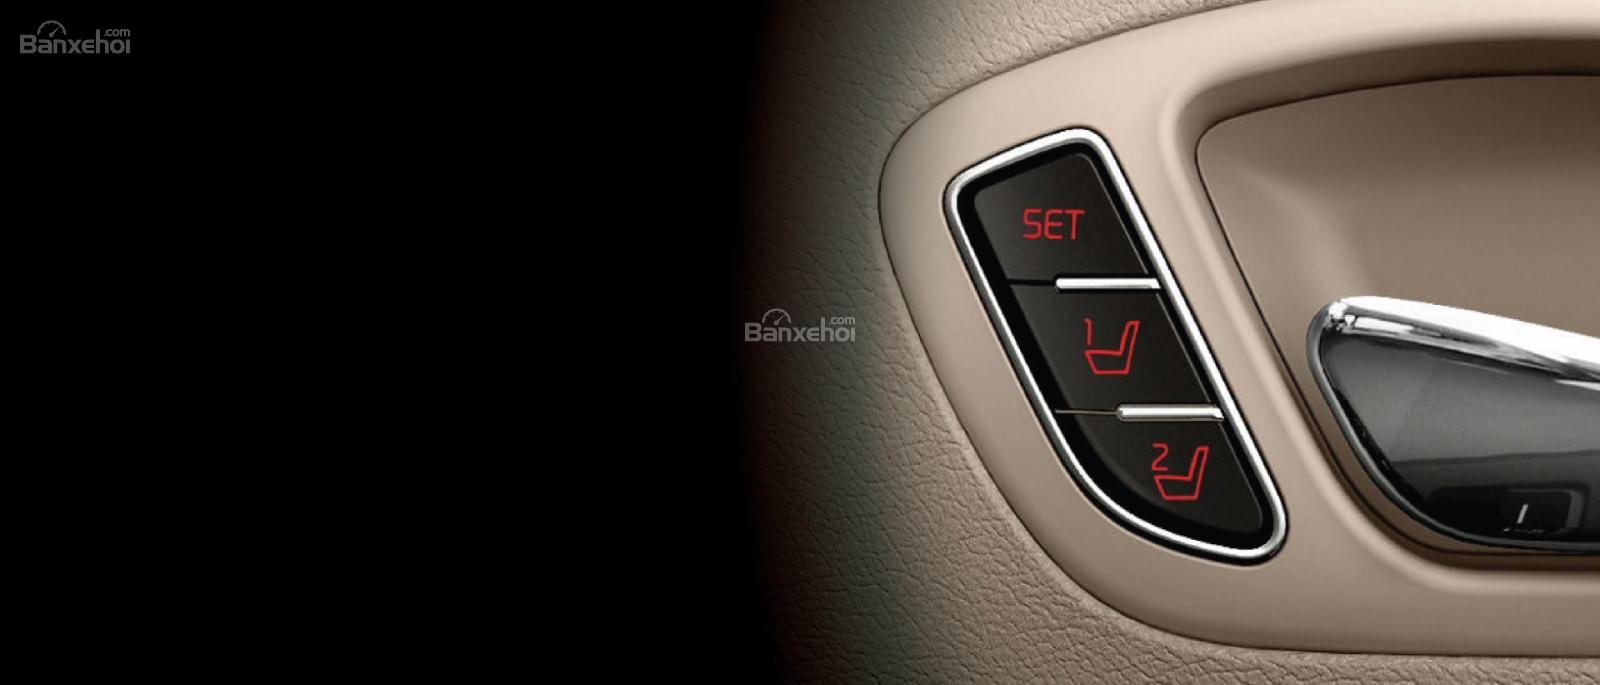 Đánh giá xe Kia Sedona bản Platinum G về tiện nghi 4